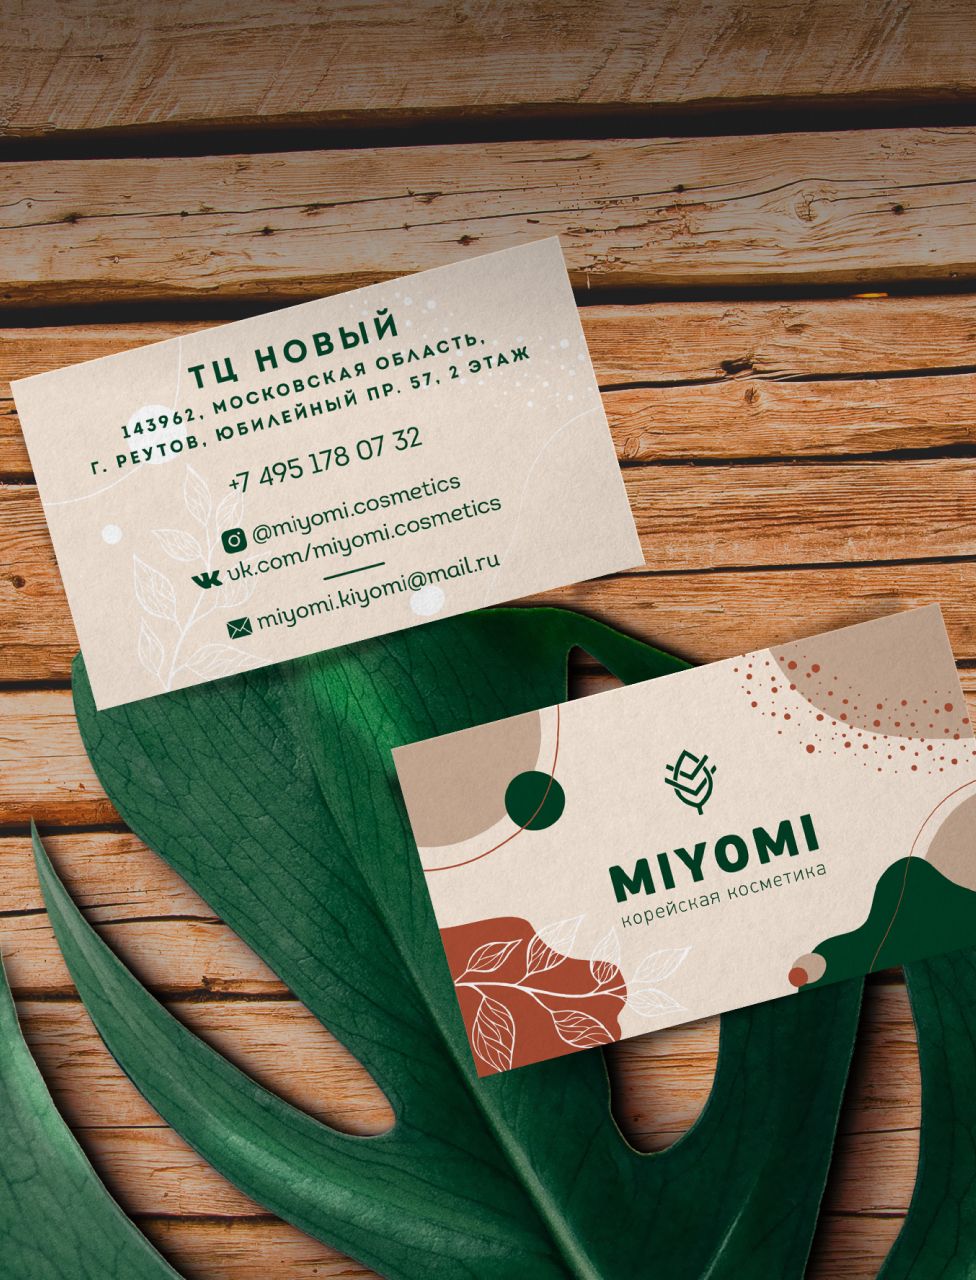 Miyomi